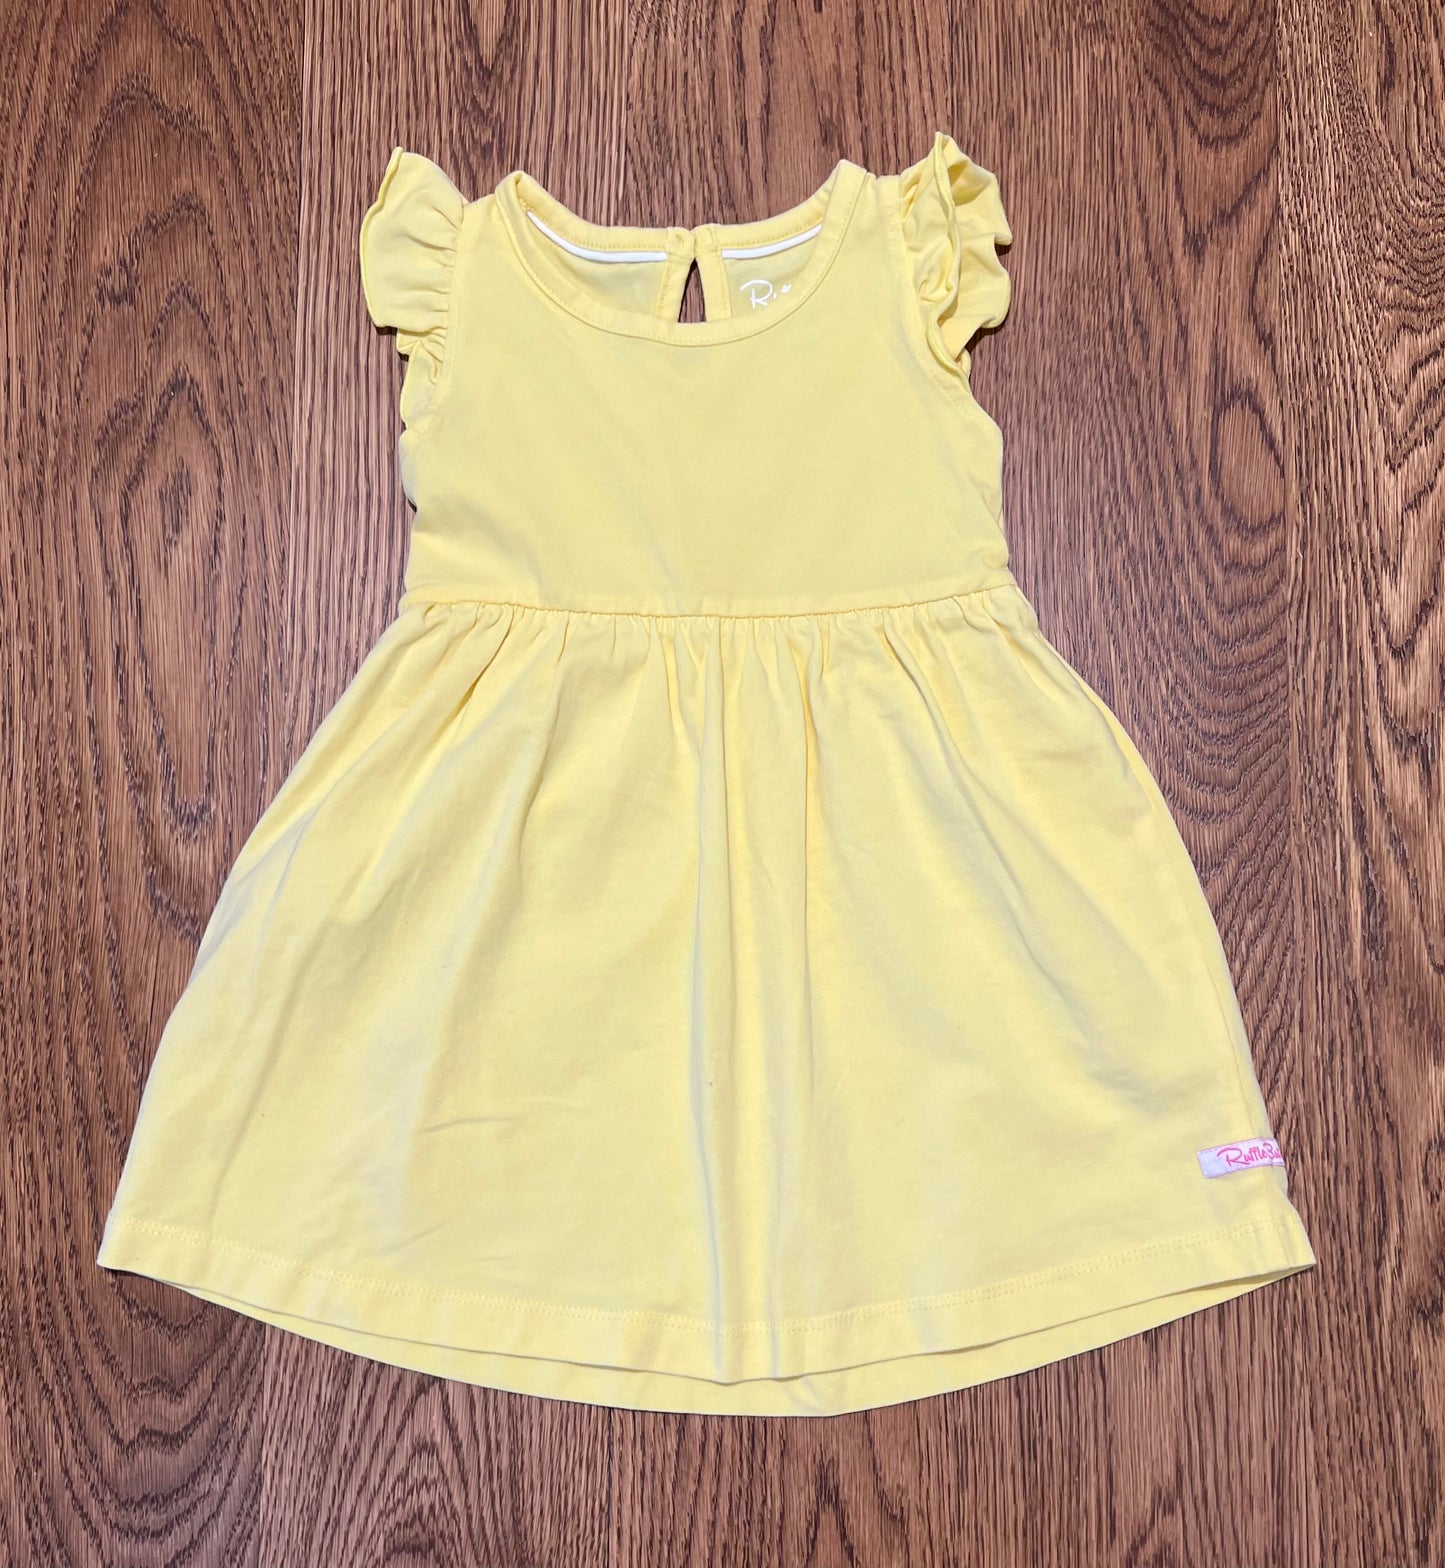 Ruffle Butts Girls 18-24 months Yellow Dress